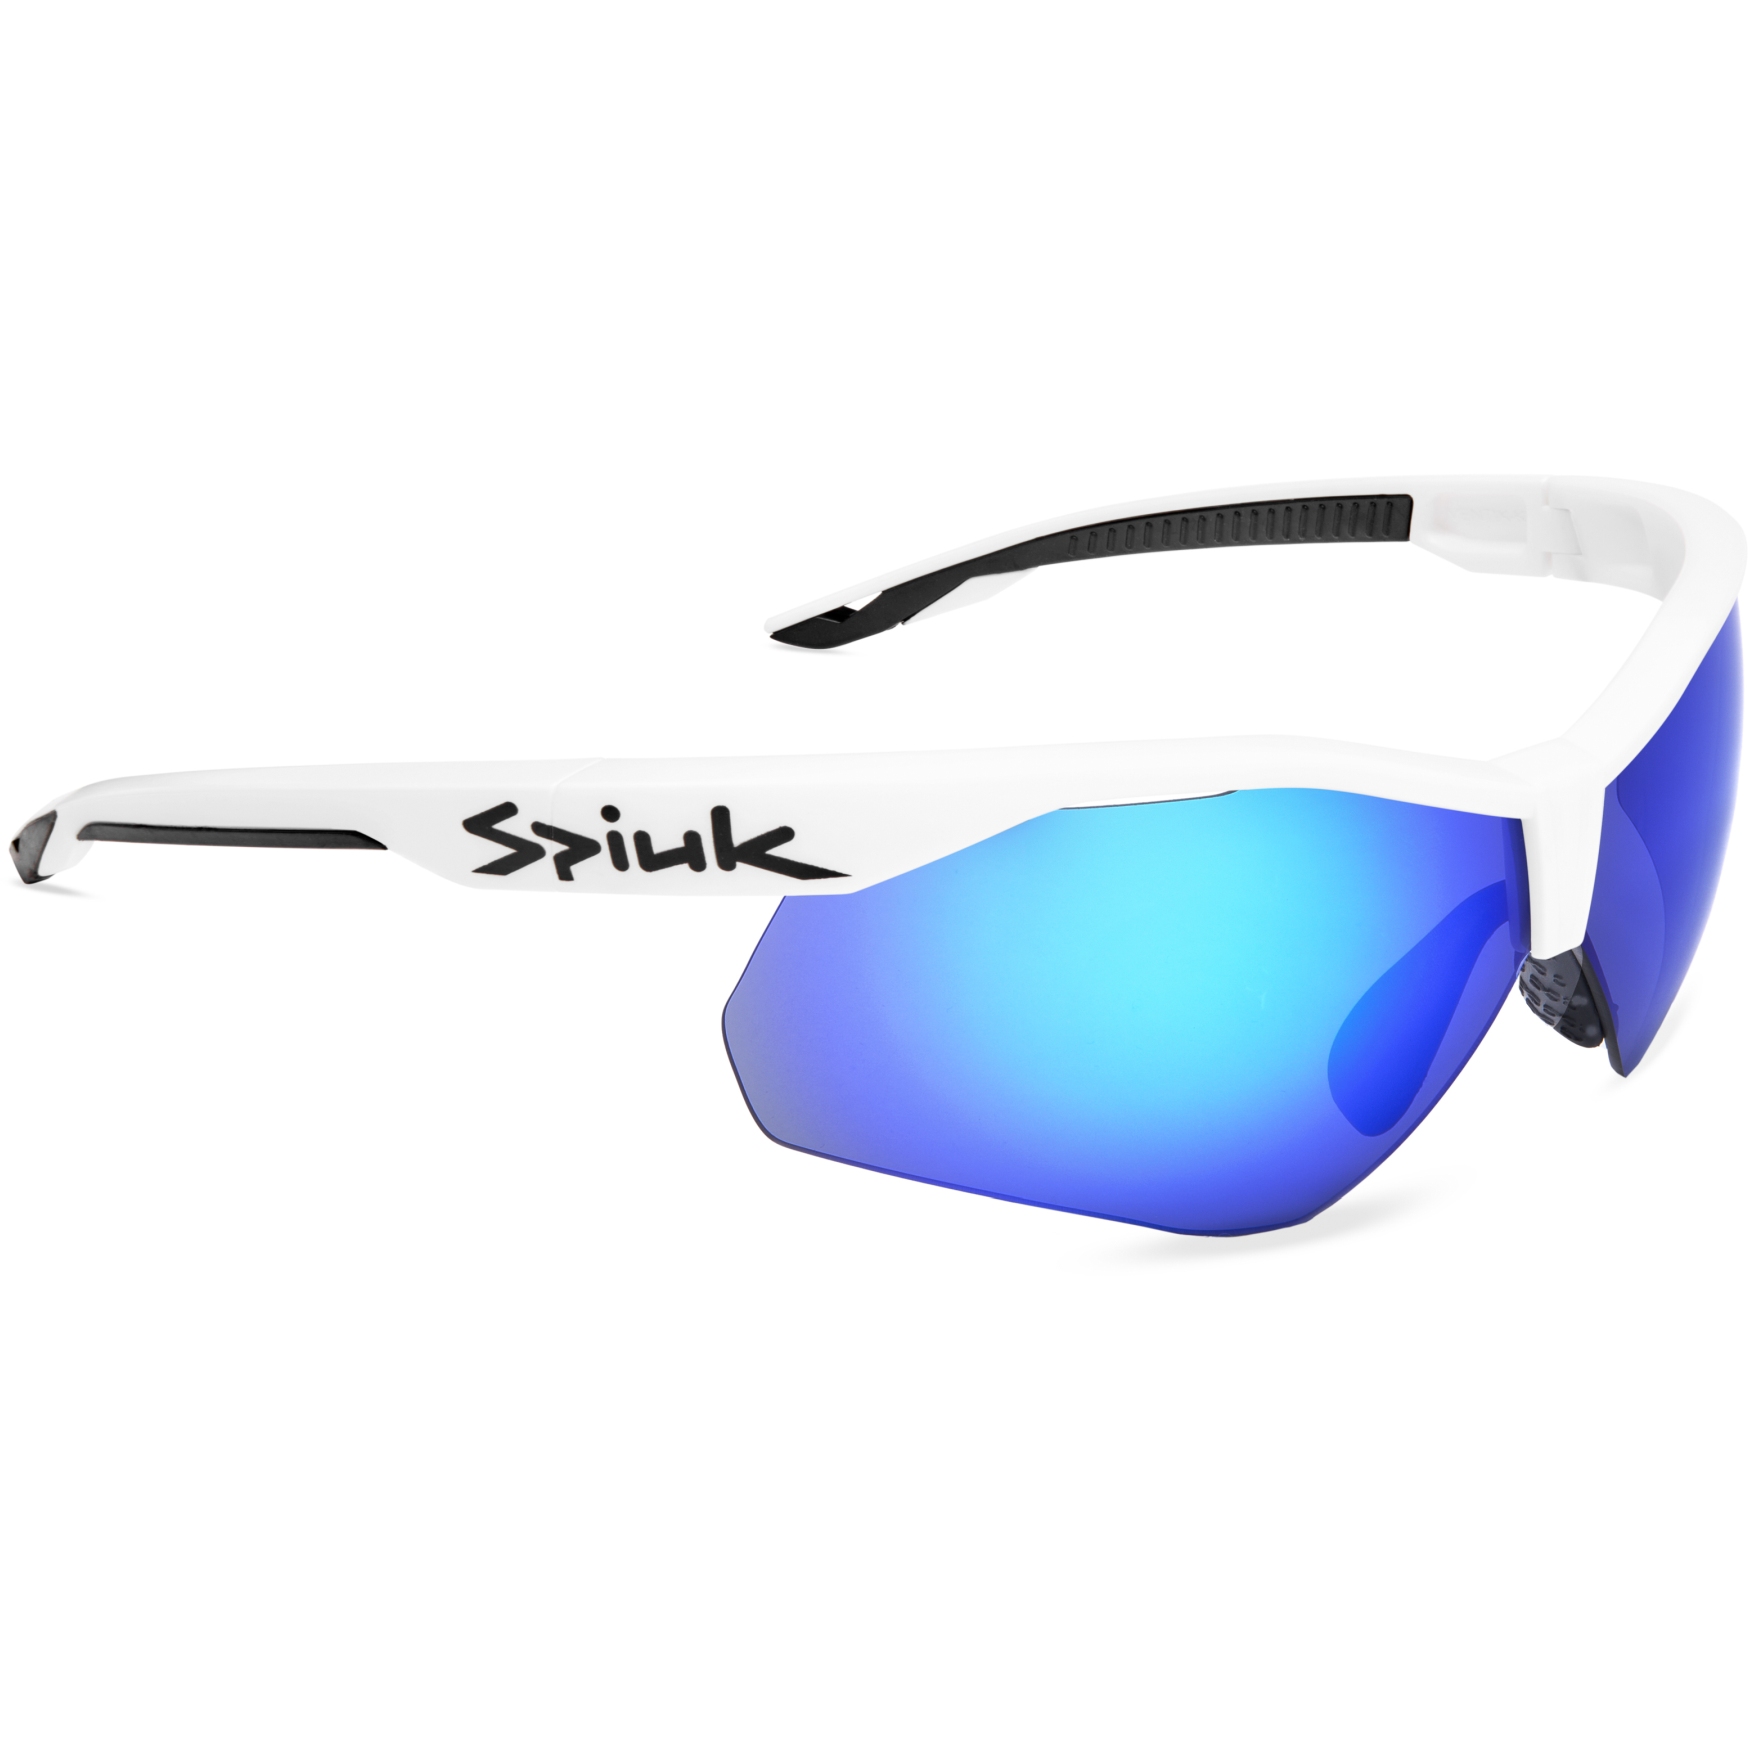 Produktbild von Spiuk Ventix-K Brille - Weiß/Schwarz | Blau verspiegelt/Klar